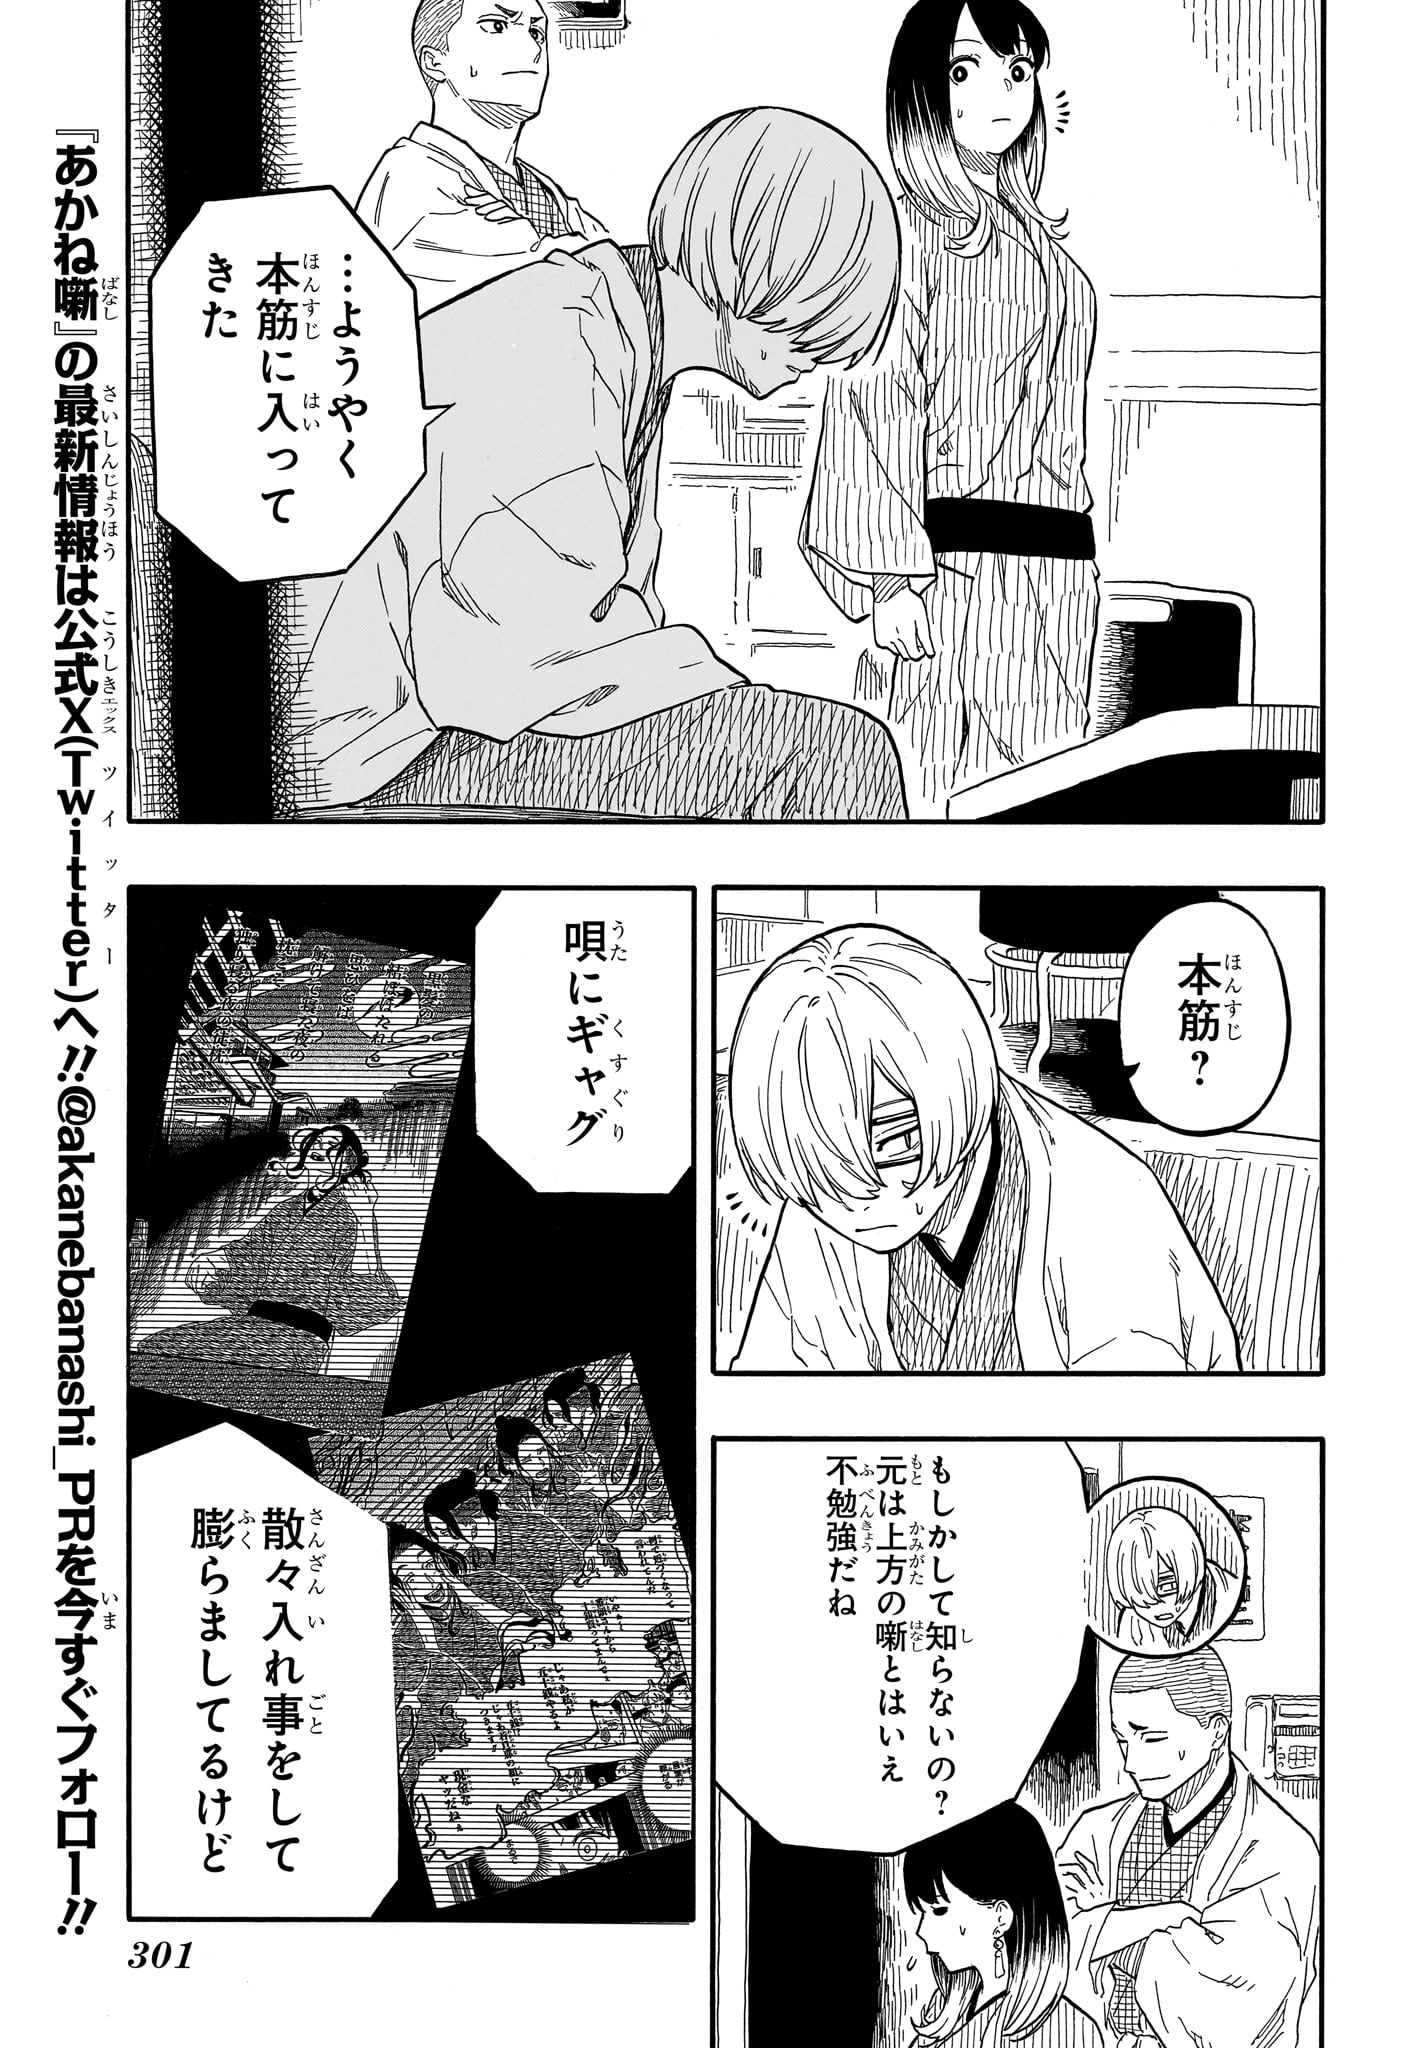 Akane-Banashi - Chapter 113 - Page 5